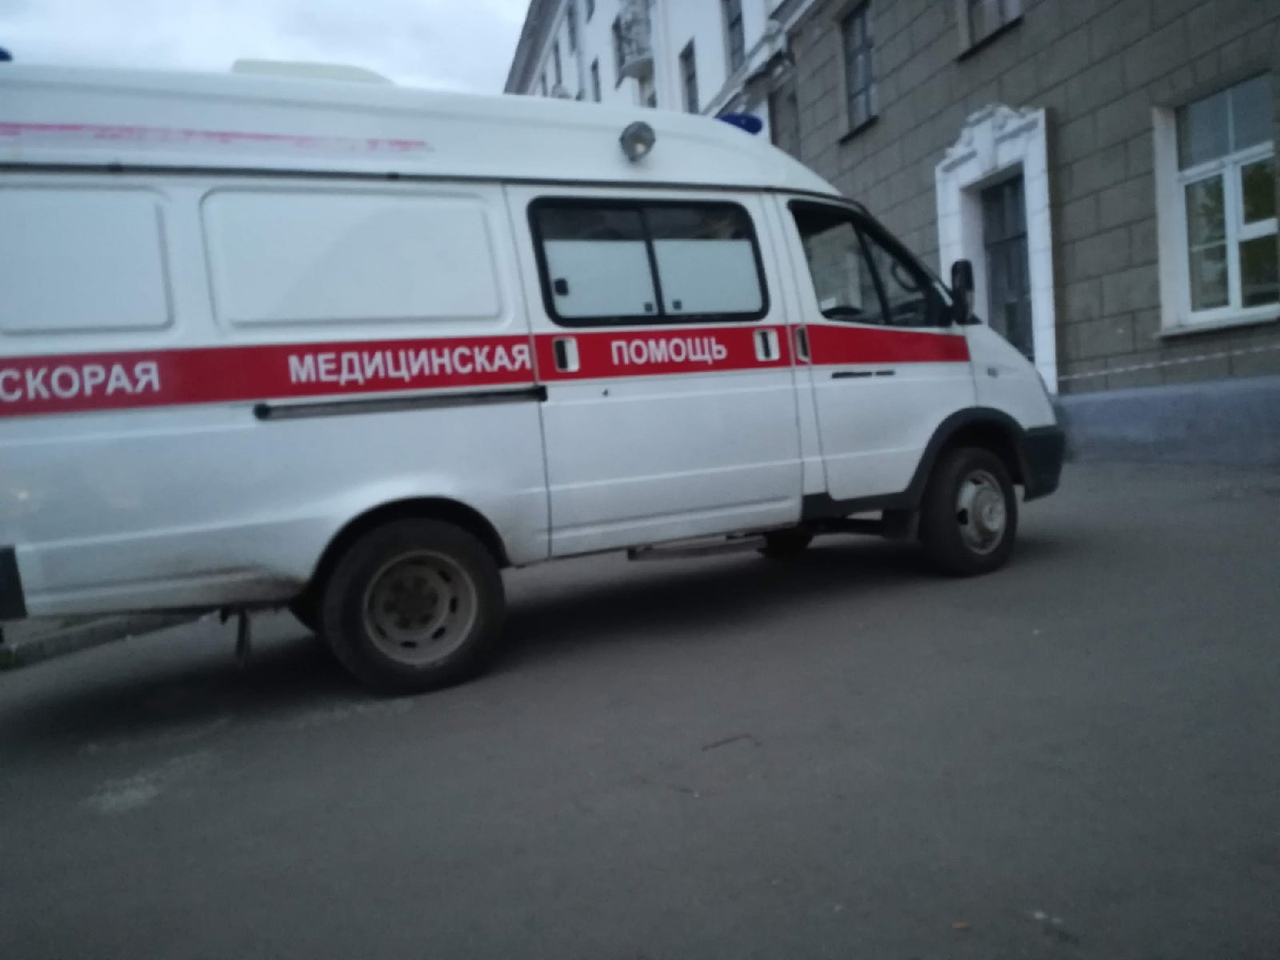 Трехлетняя девочка умерла от внутреннего кровотечение в Нижегородской области